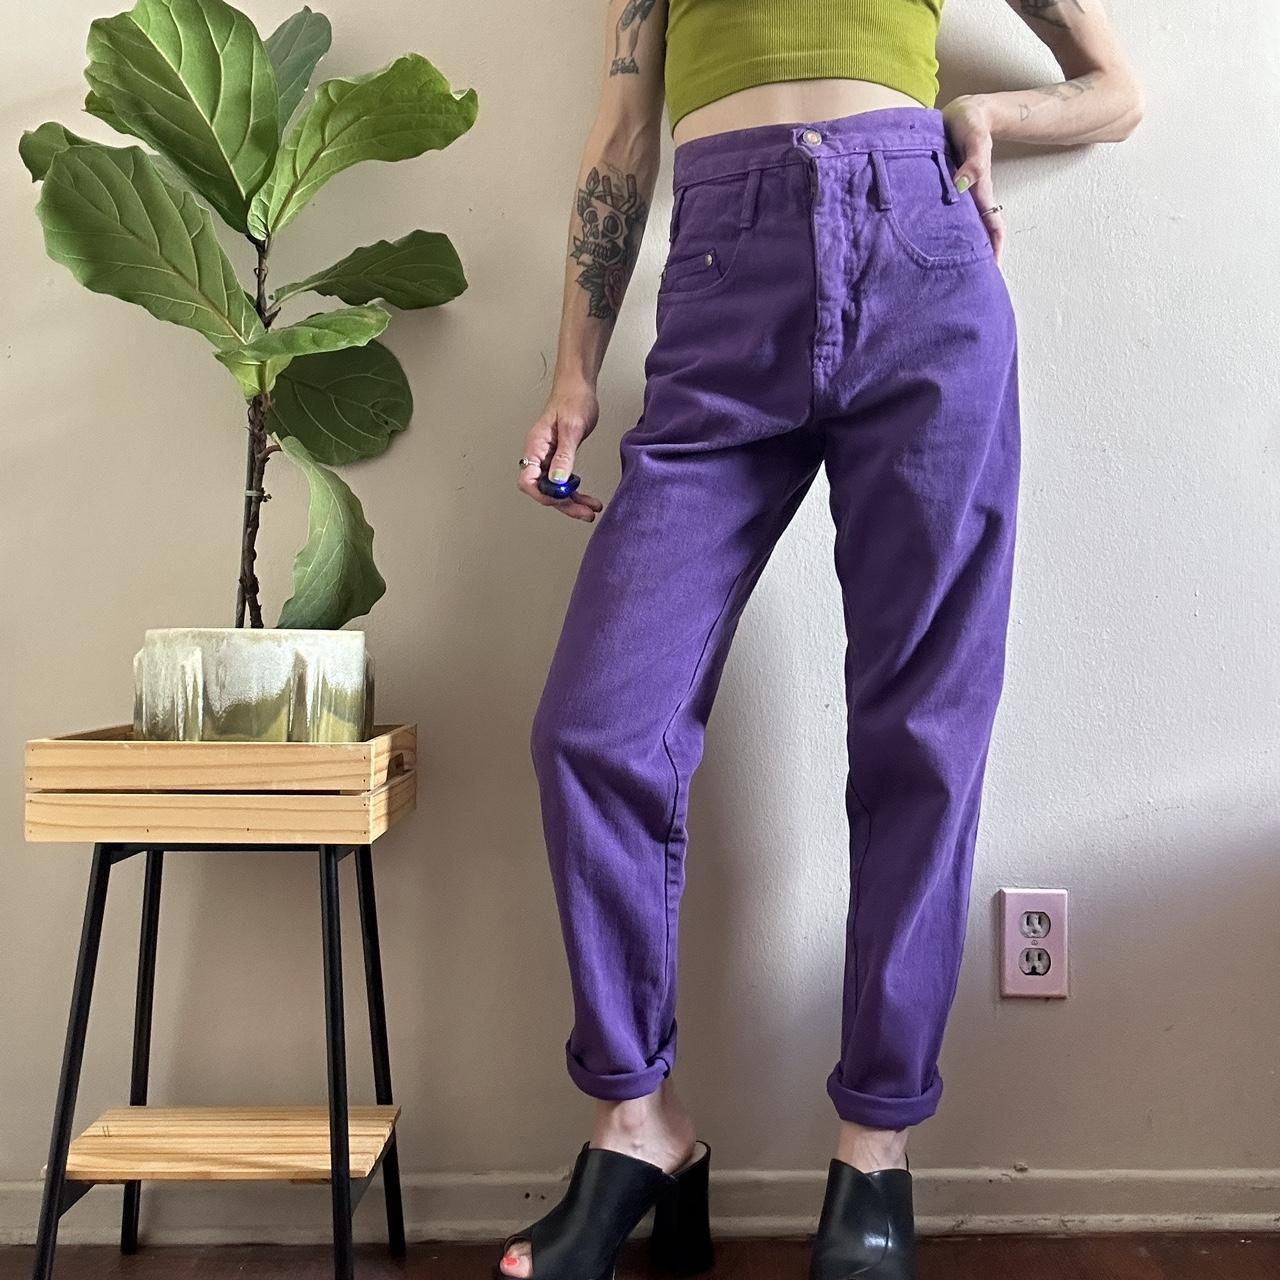 Women's Purple Jeans